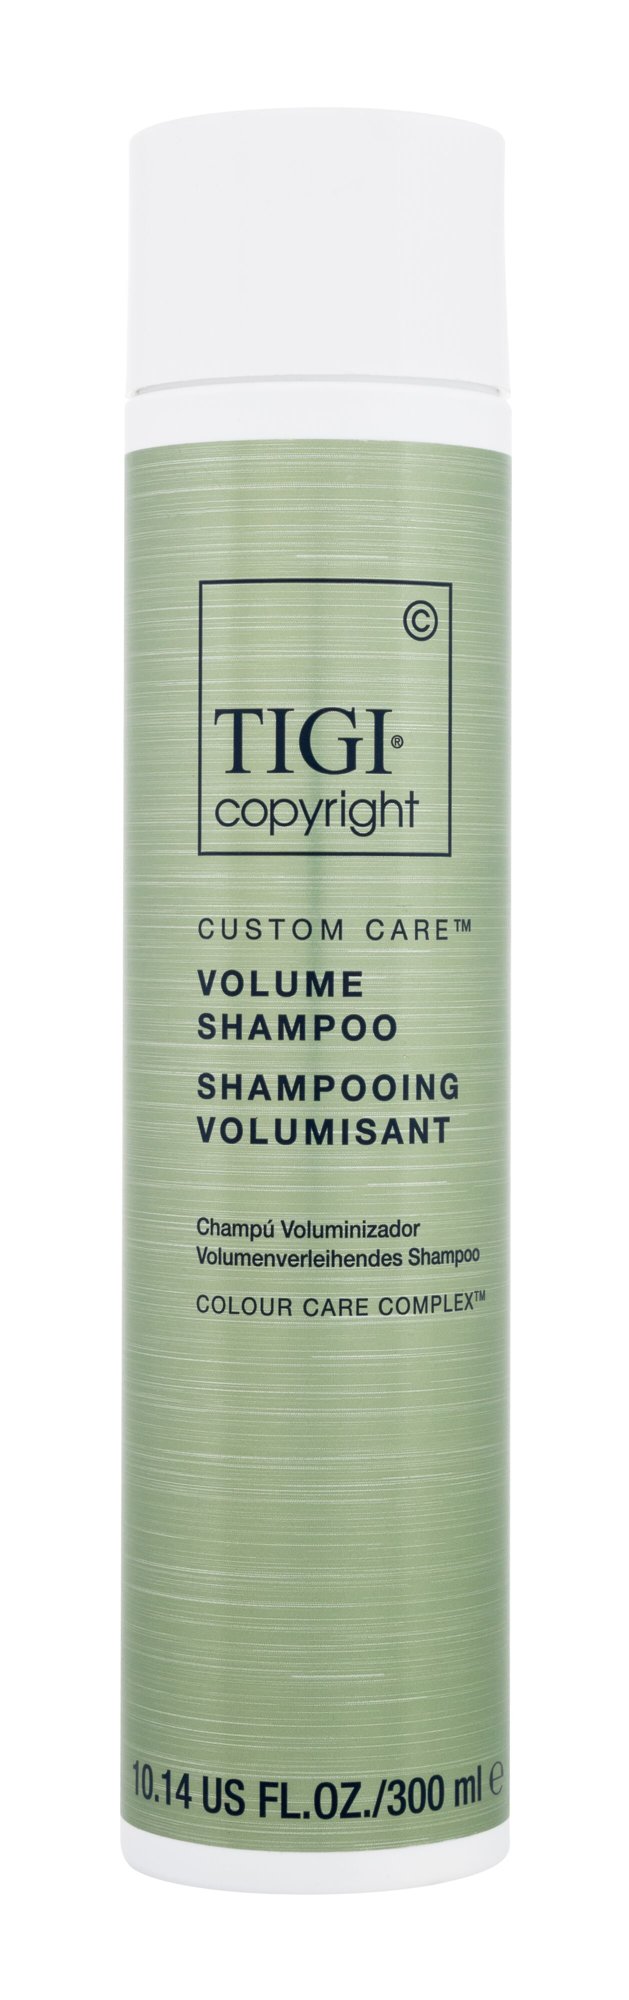 Tigi Copyright Custom Care Volume Shampoo 300ml šampūnas